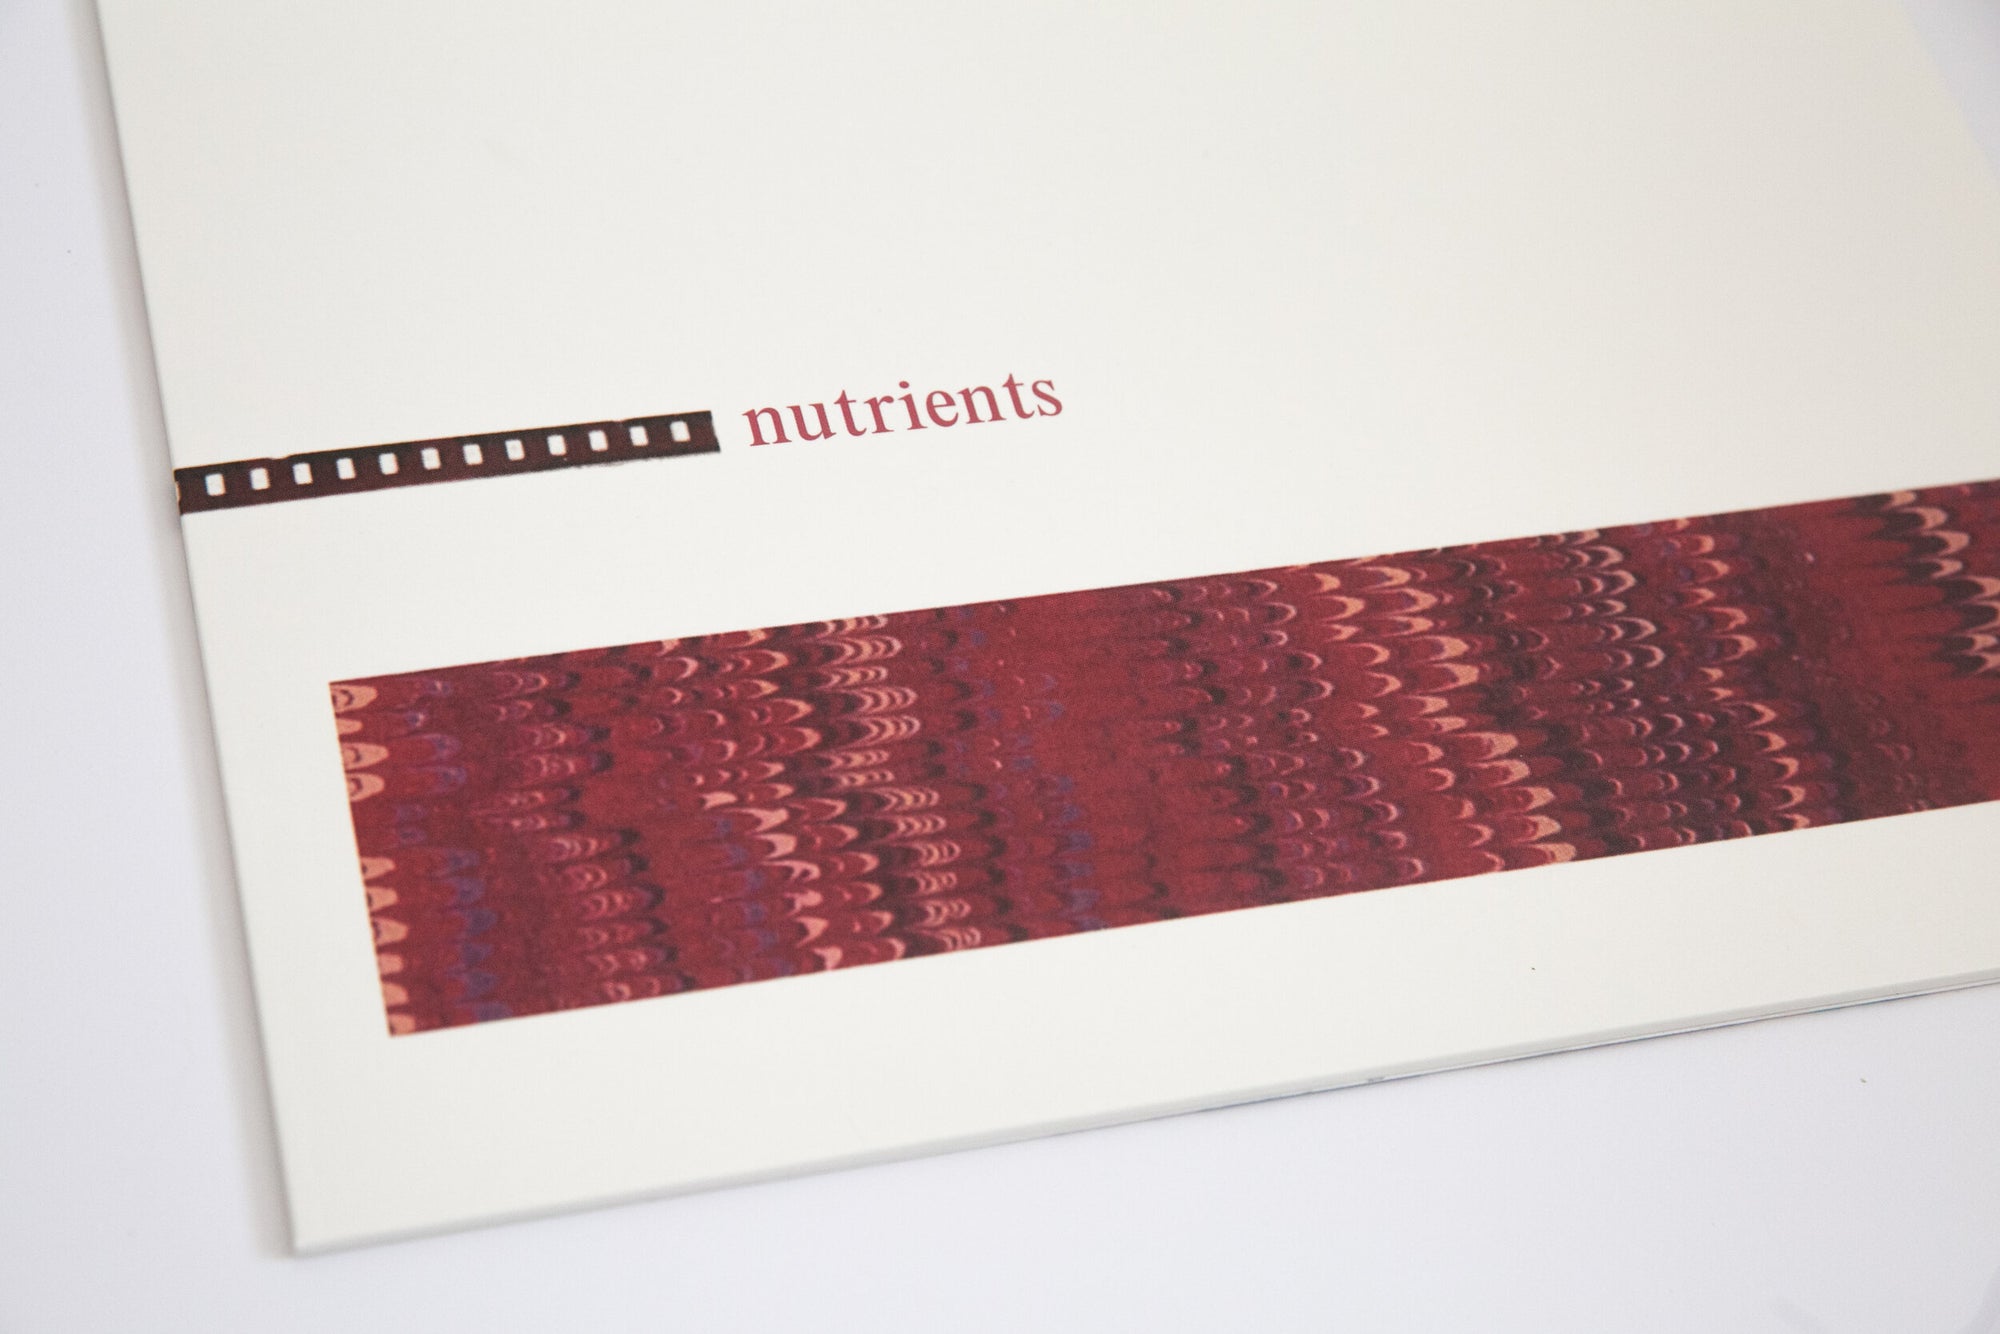 Nutrients - Nutrients Oxblood Red Vinyl